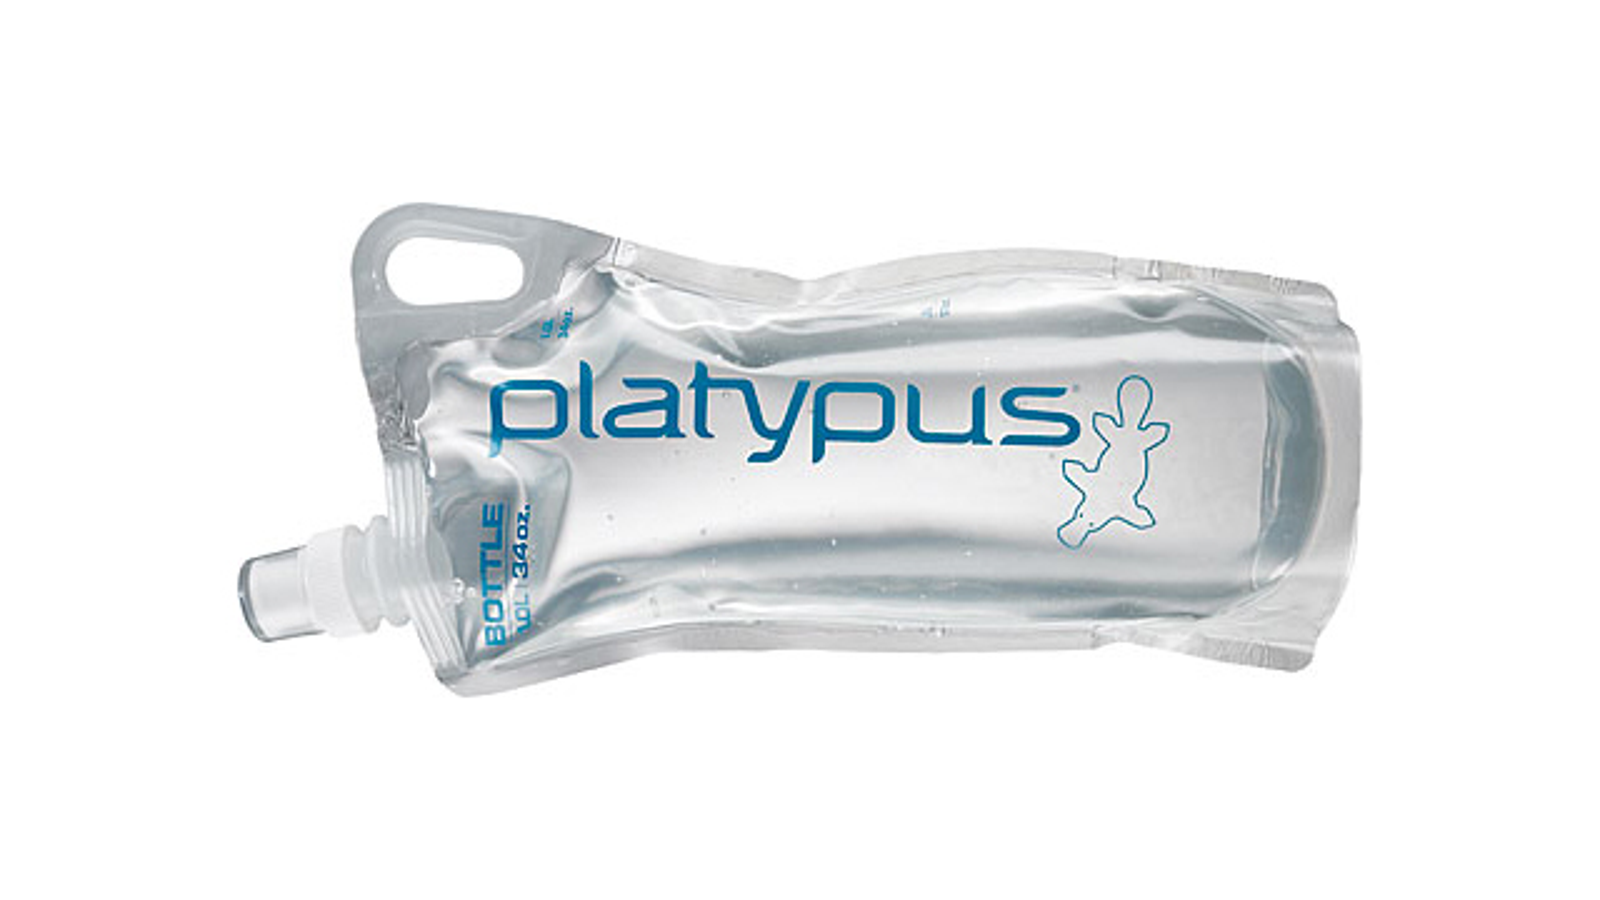 platypus water bottle vs regular bottles